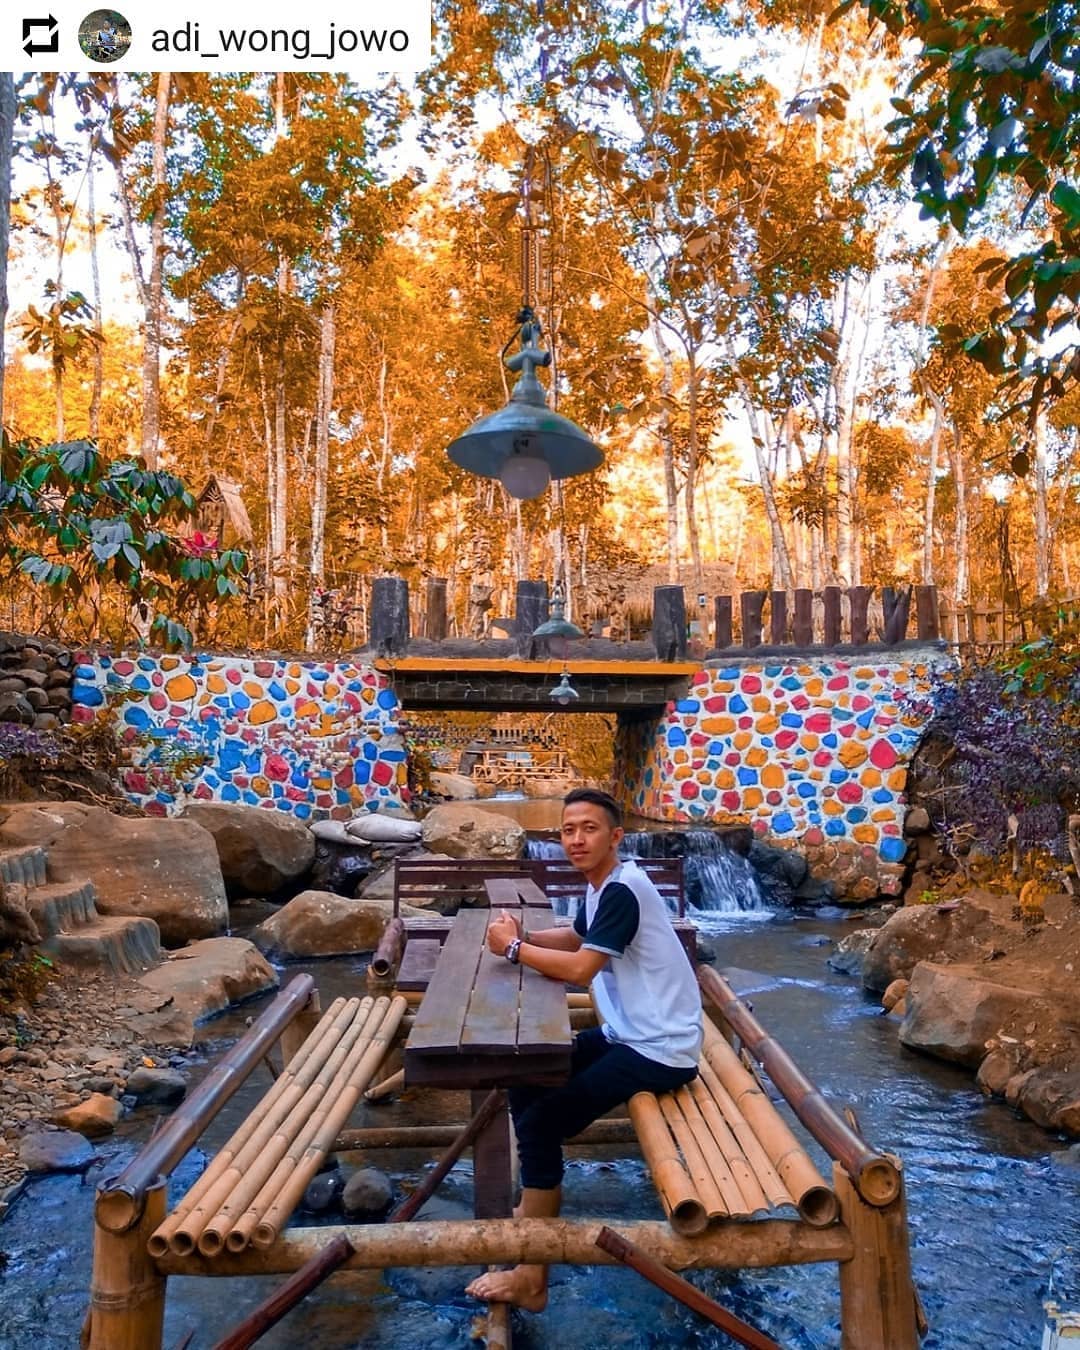 Wana Wisata Sumber Biru, Destinasi Instagenik Jombang Tengah Sungai